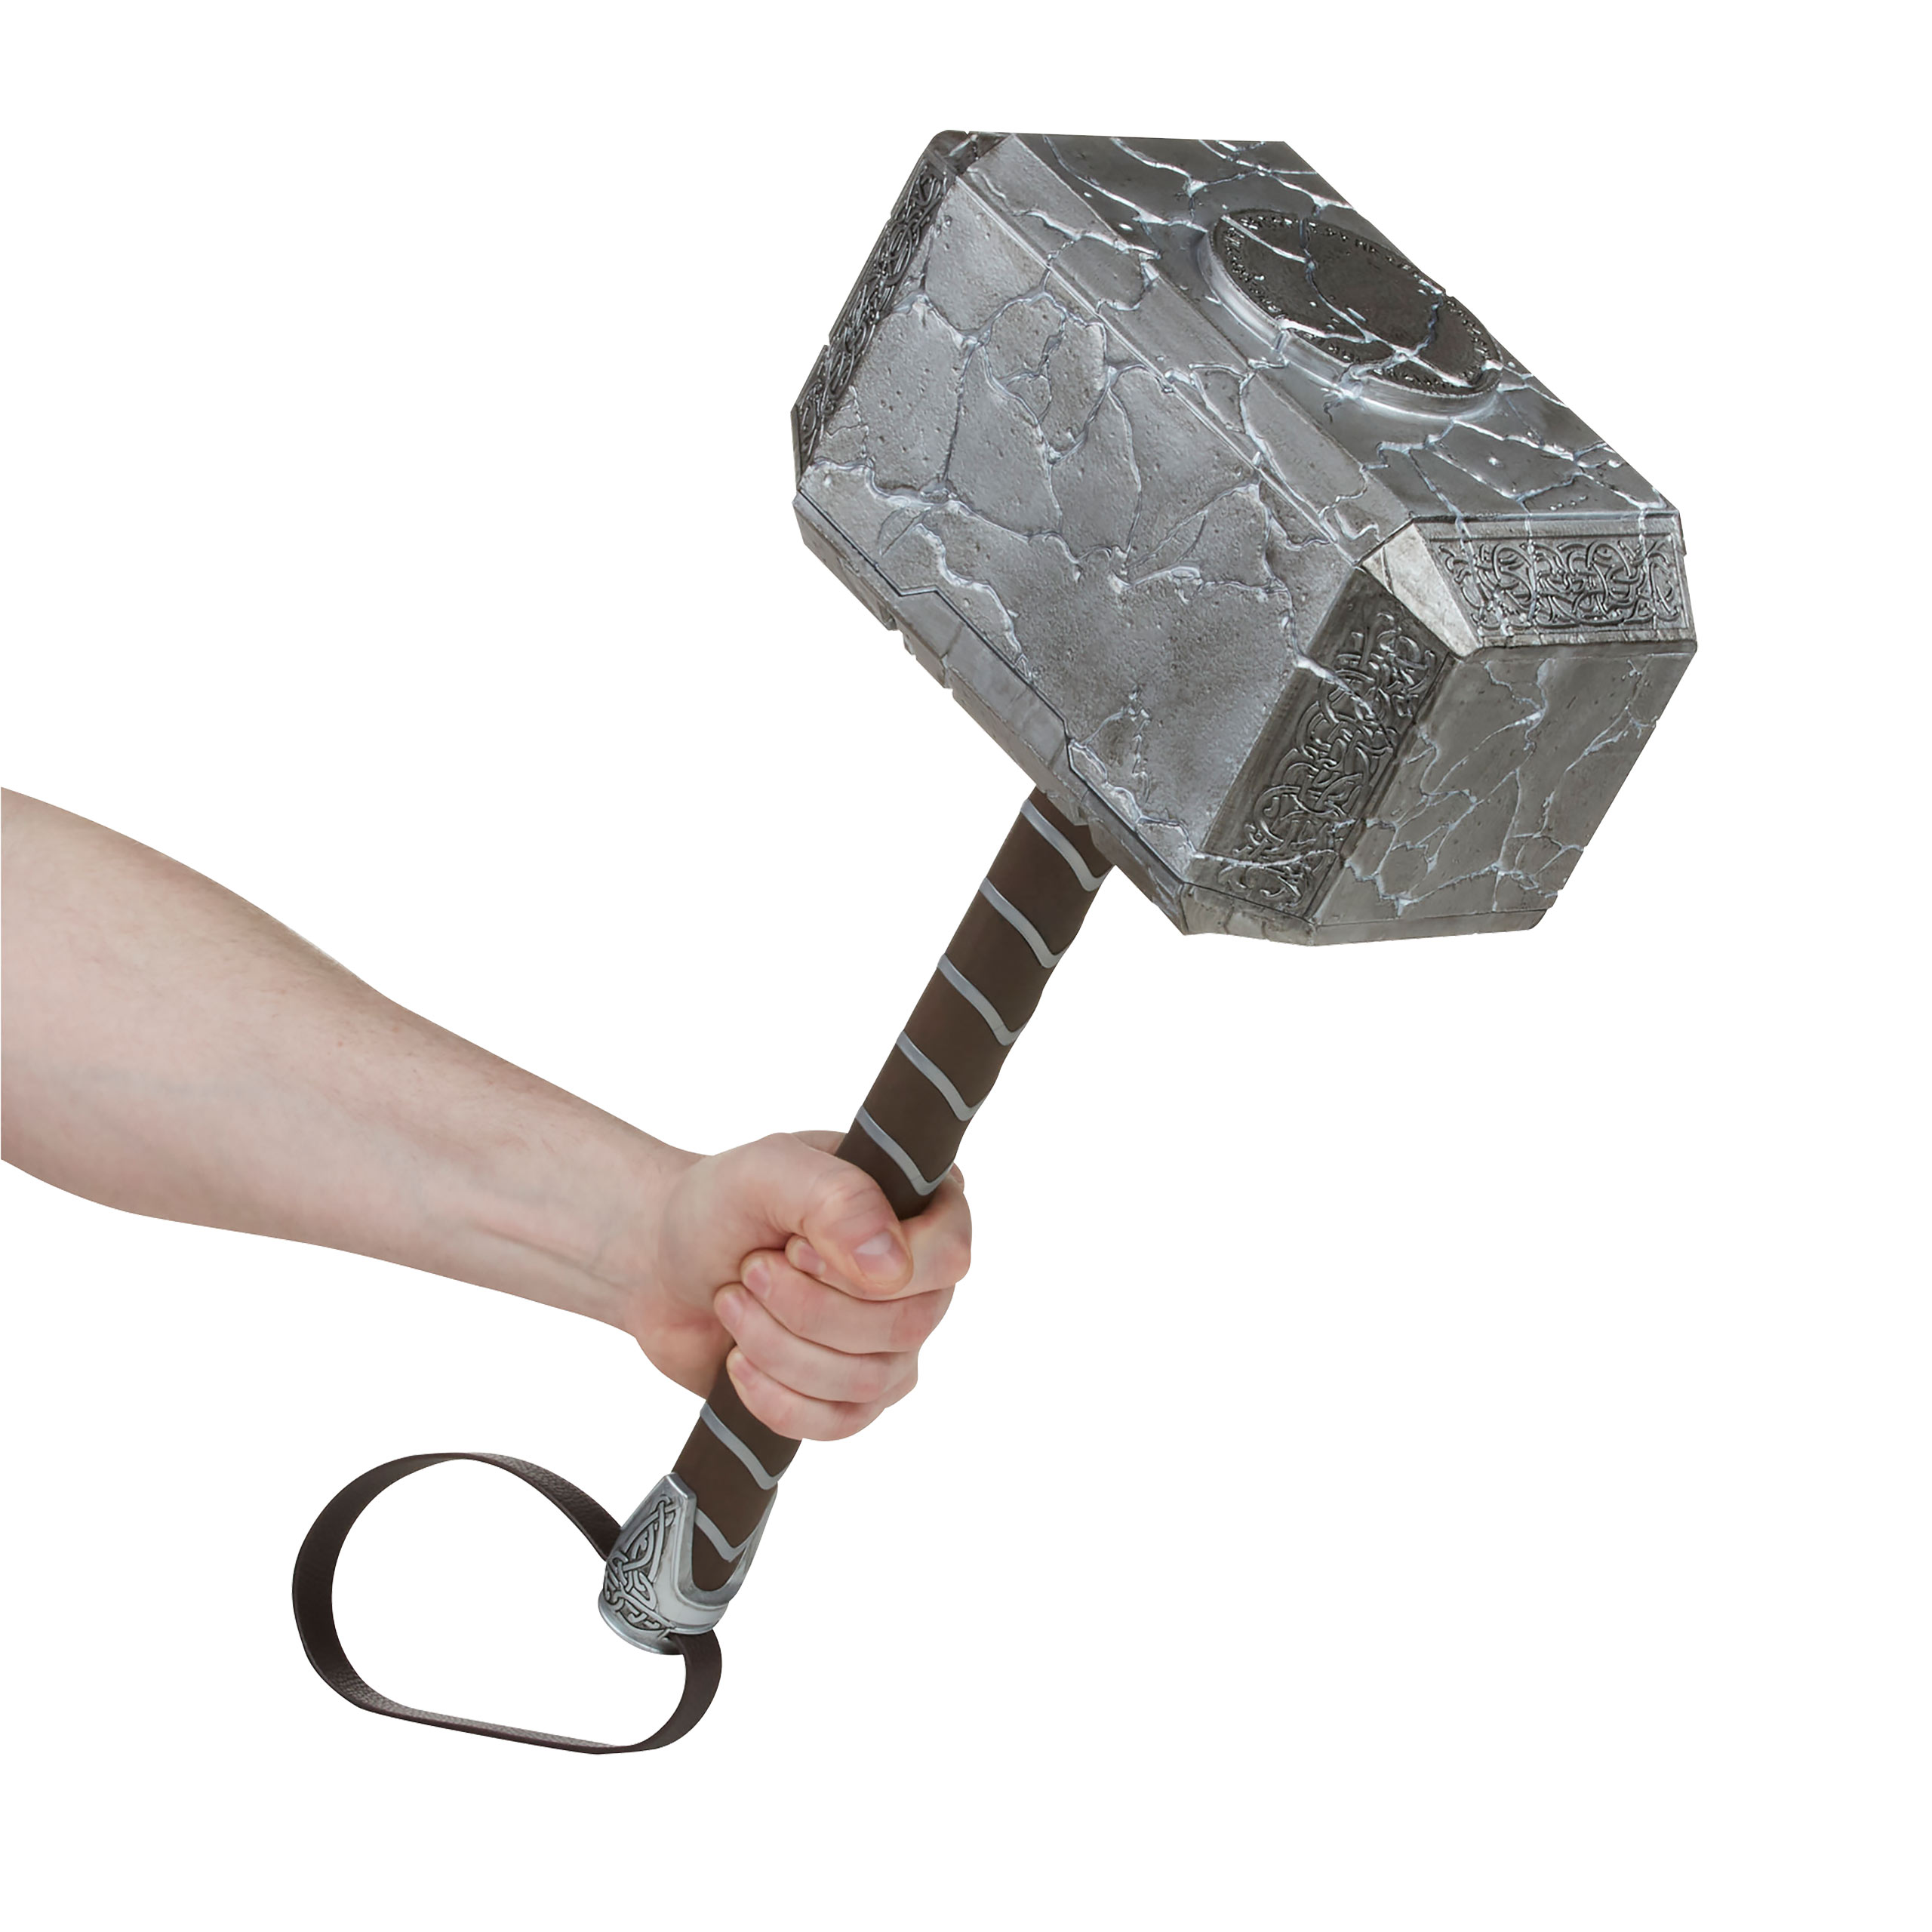 Thor - Mjölnir Hammer Premium Replik mit Licht und Sound